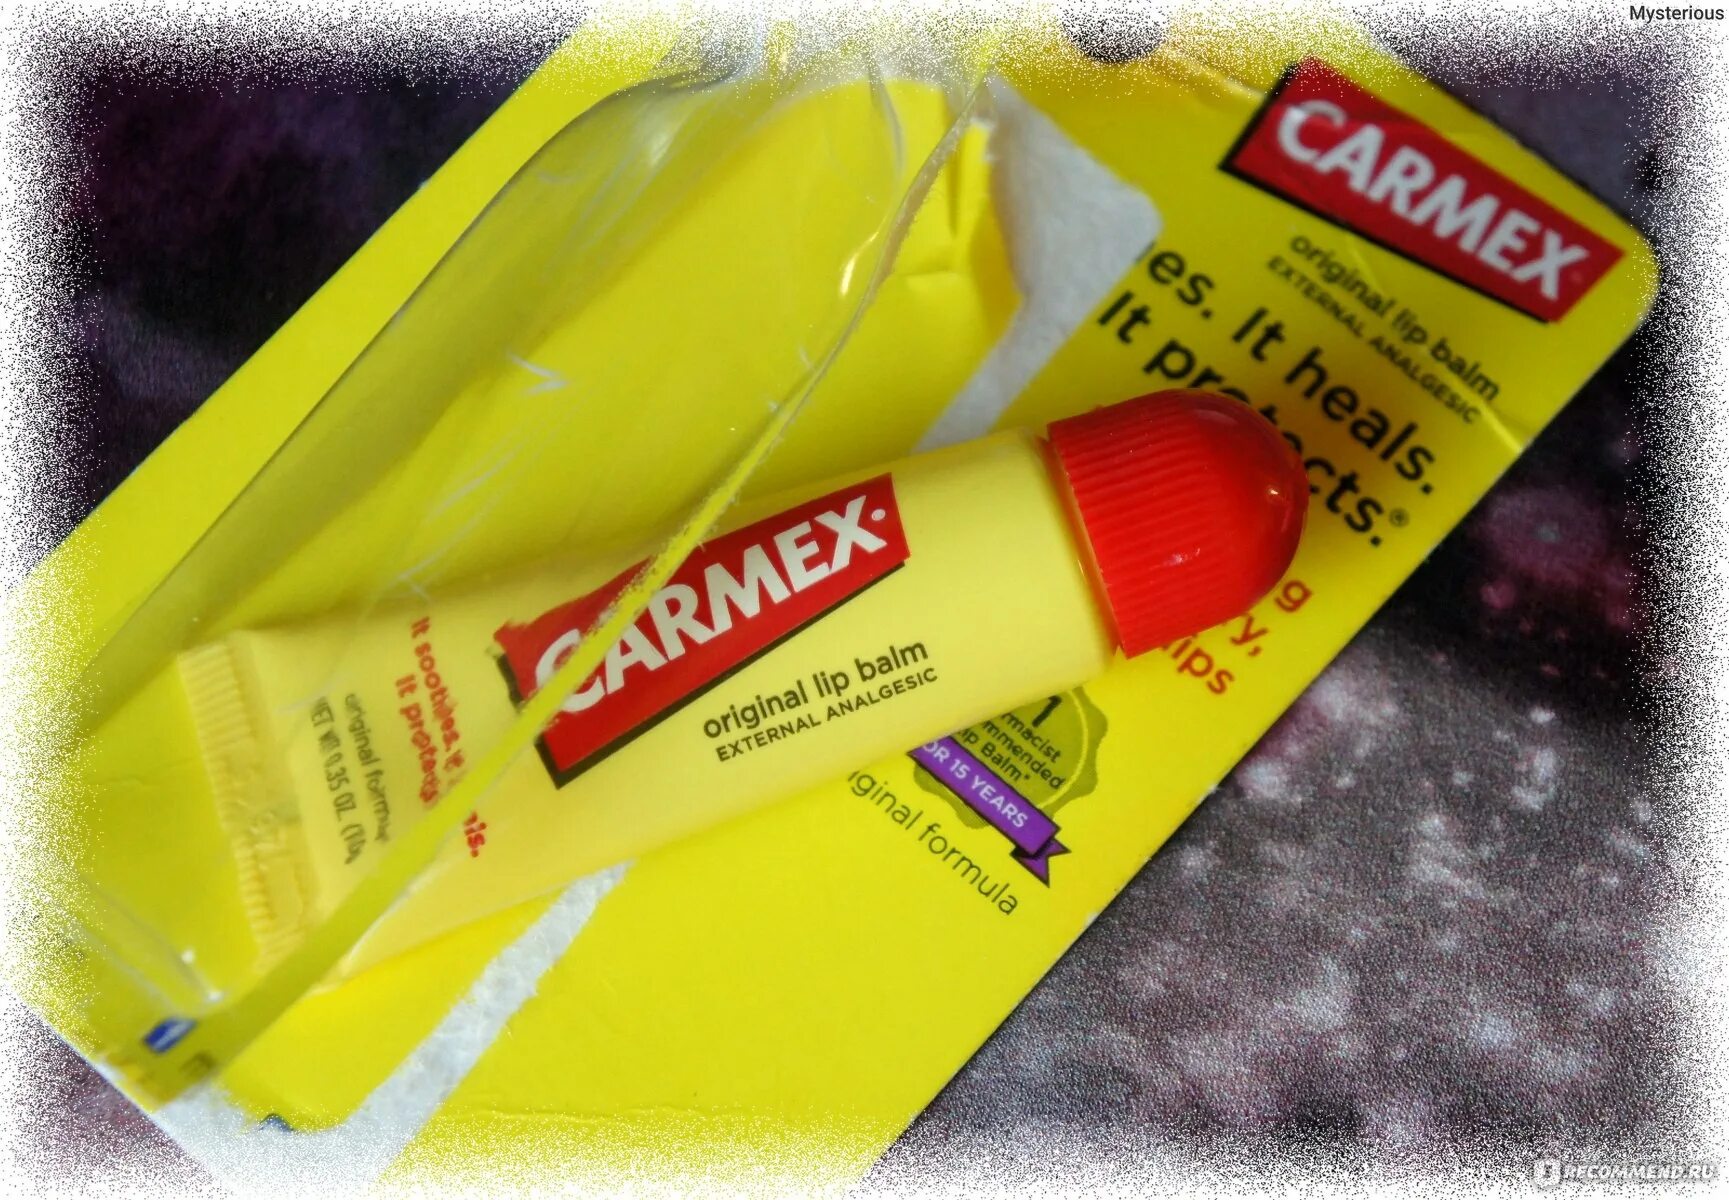 Carmex бальзам для губ Original. Carmex, классический бальзам для губ, лечебный,. Carmex бальзам для губ мятный. Кармекс состав.